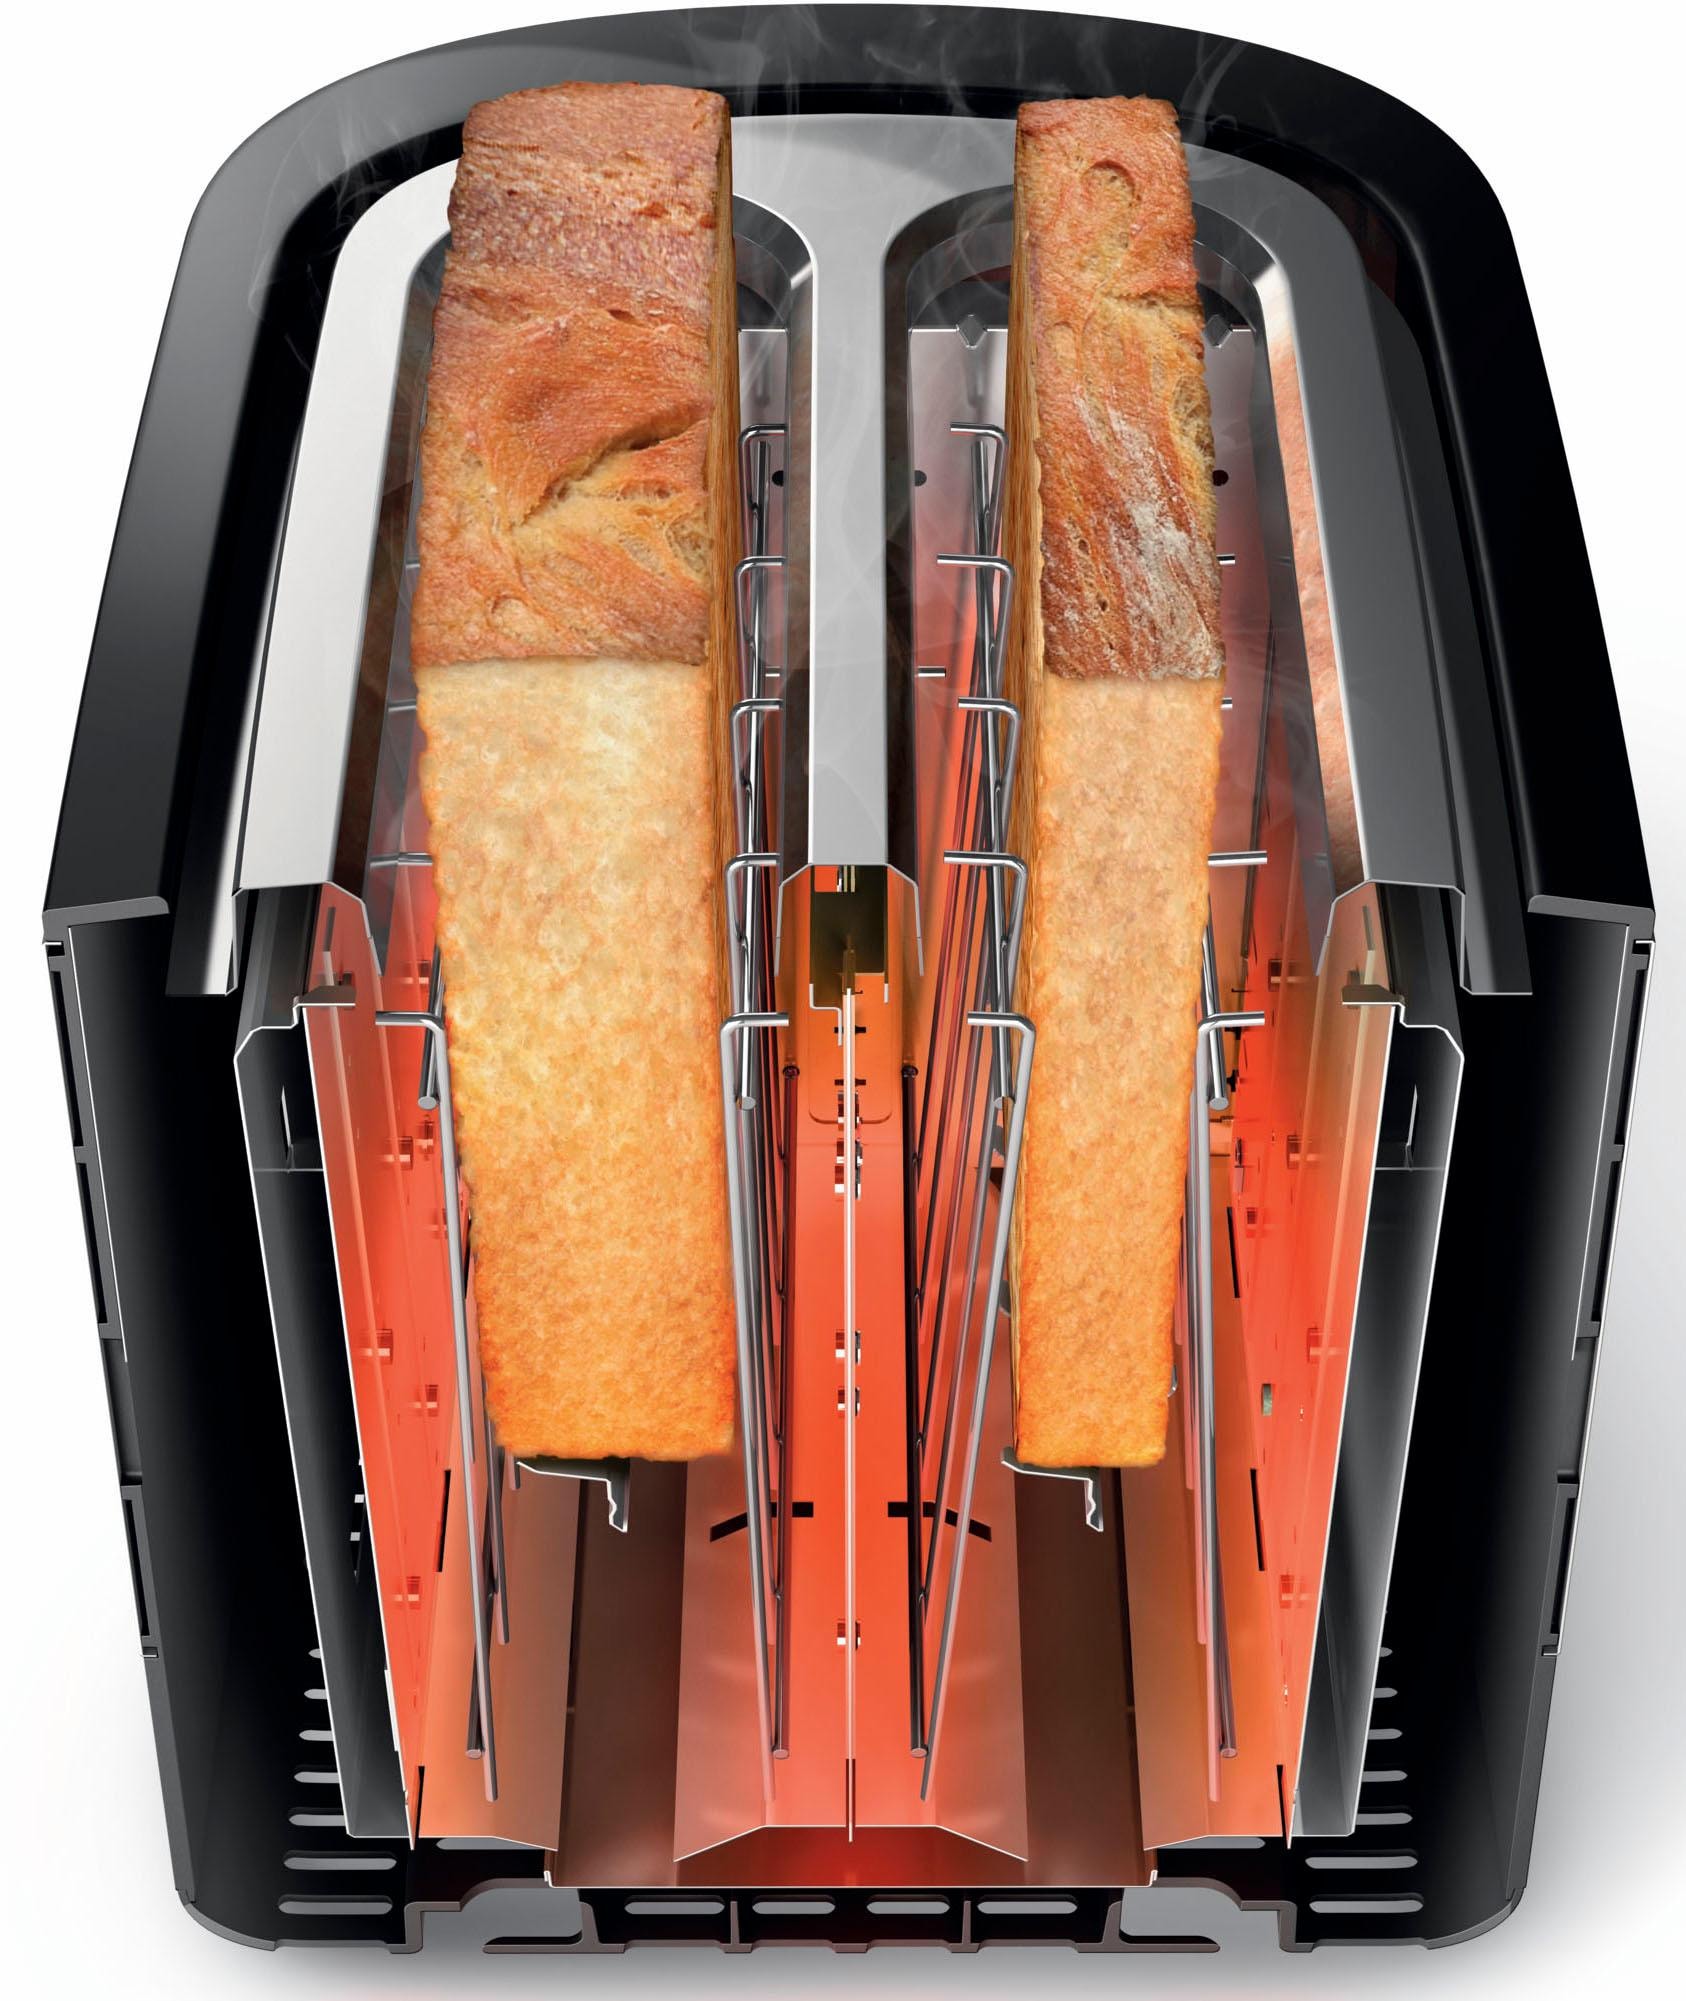 Philips Toaster »HD2637/90 Viva Collection«, 2 kurze Schlitze, für 2 Scheiben, 950 W, Brötchenaufsatz, Krümelschublade, 7 Bränungsstufen, 3 Funktionen